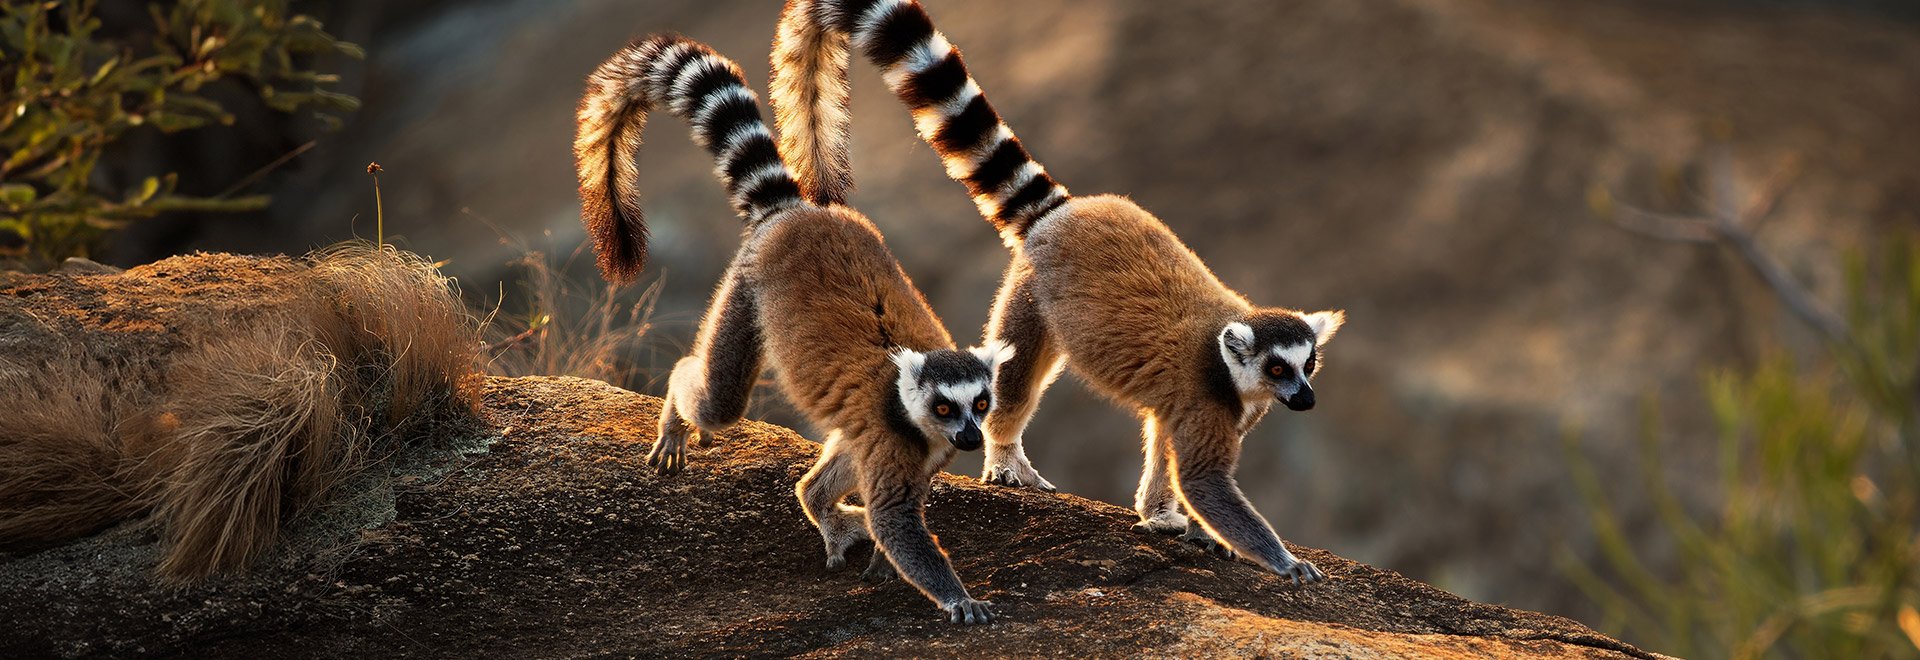 Africa Madagascar Lemur 